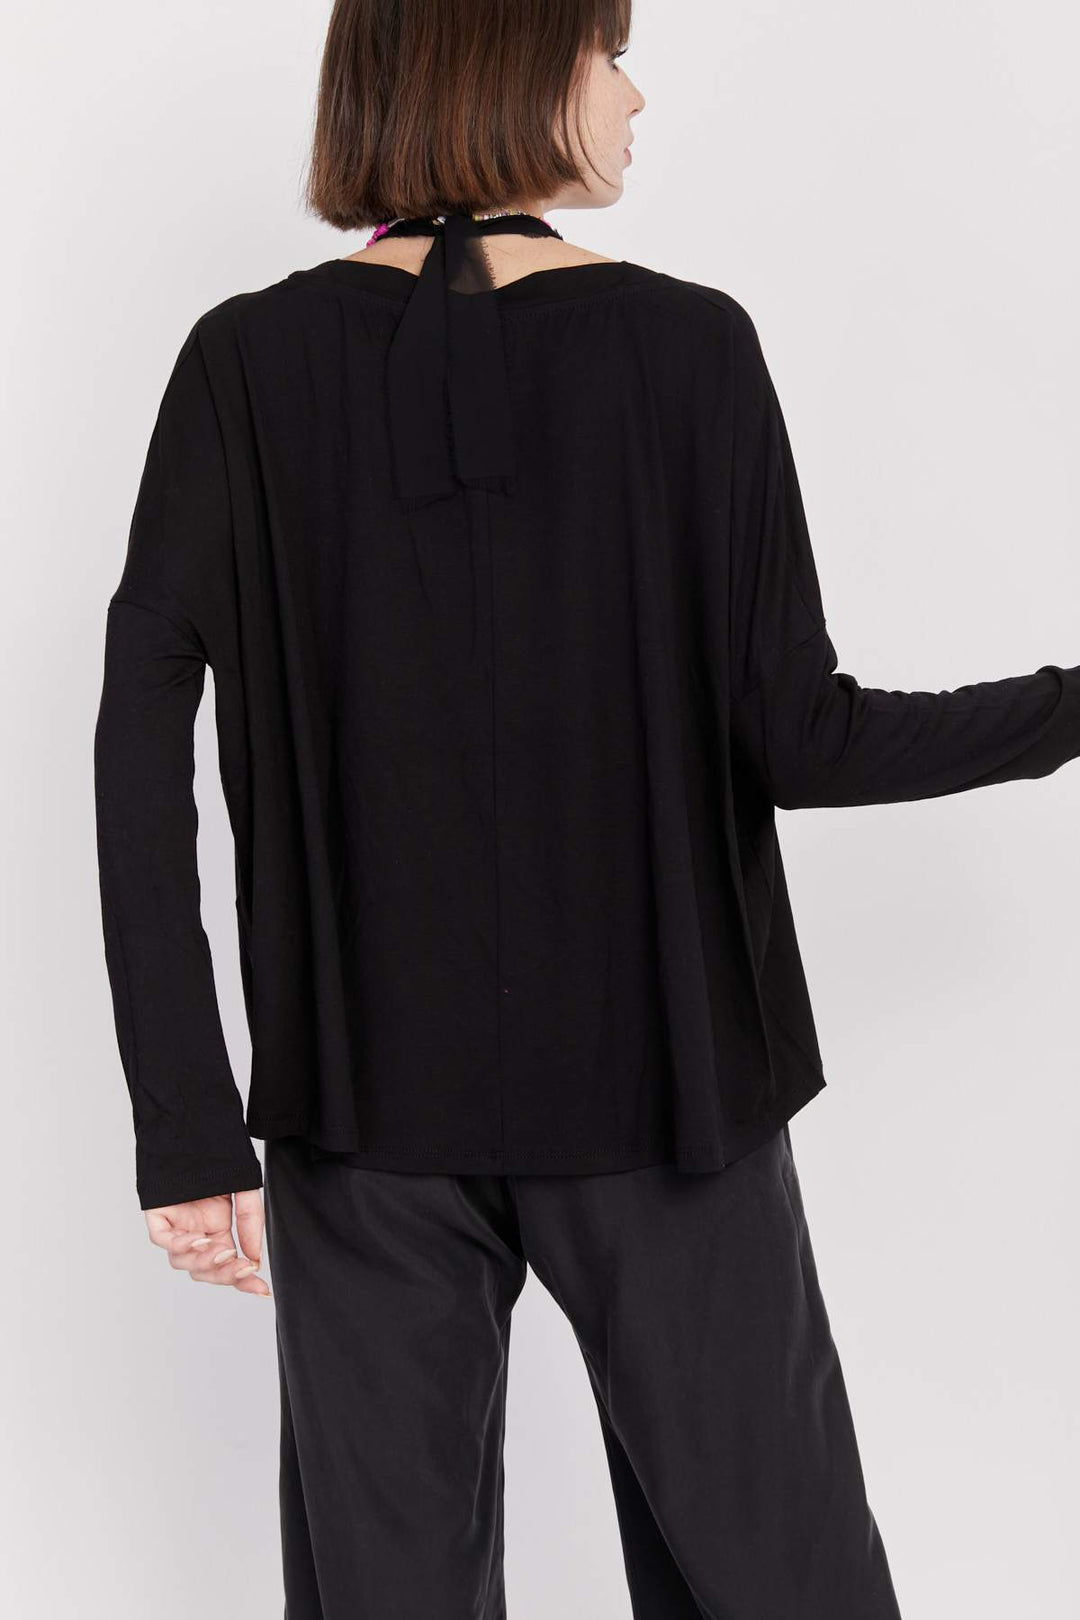 חולצת פאבלו שחורה - Monochrome